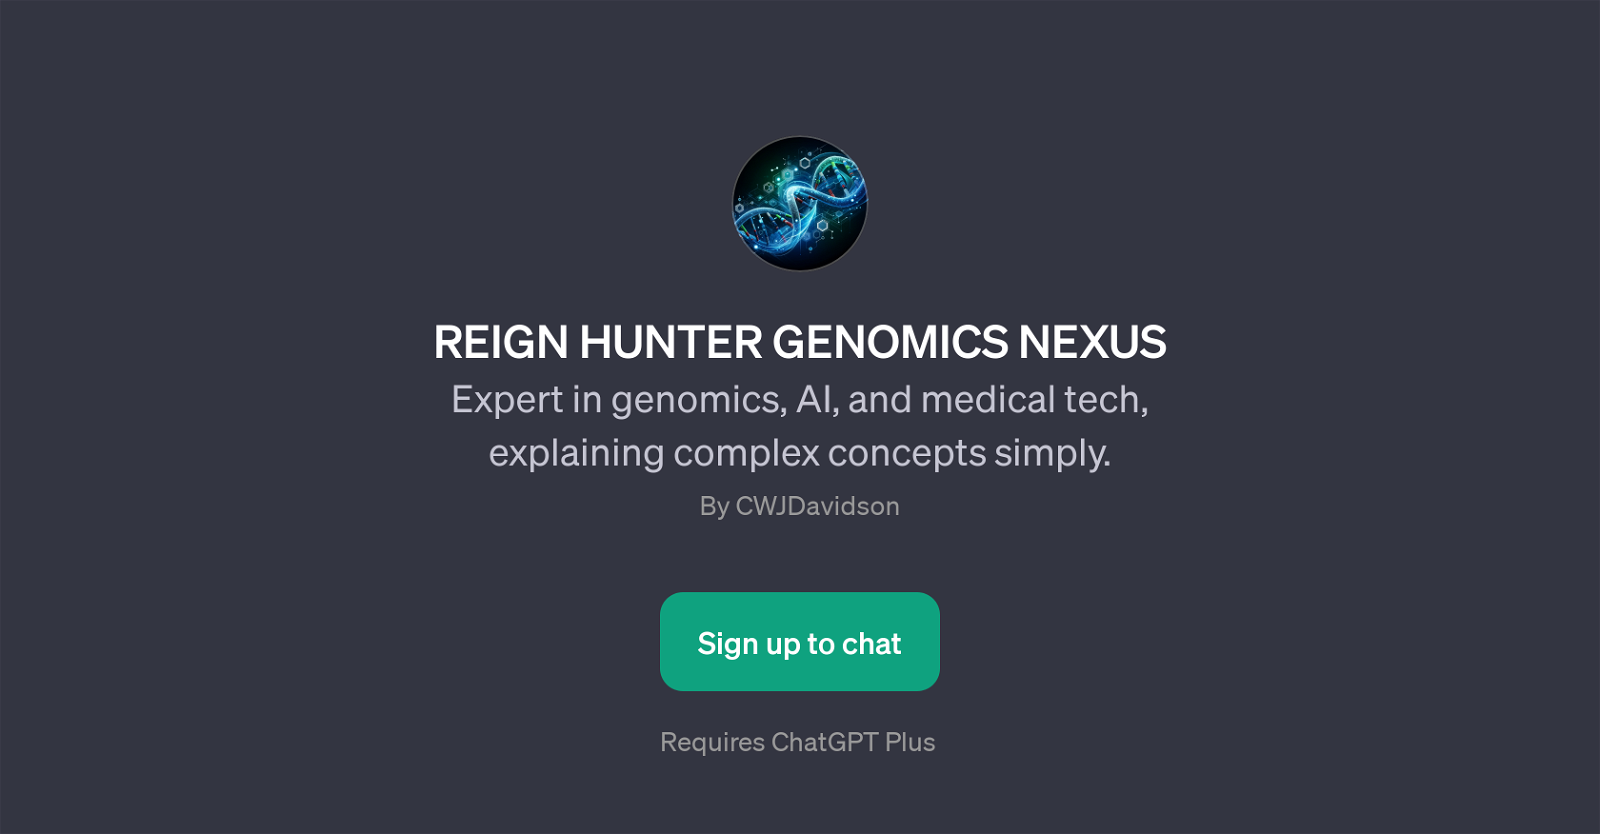 REIGN HUNTER GENOMICS NEXUS website